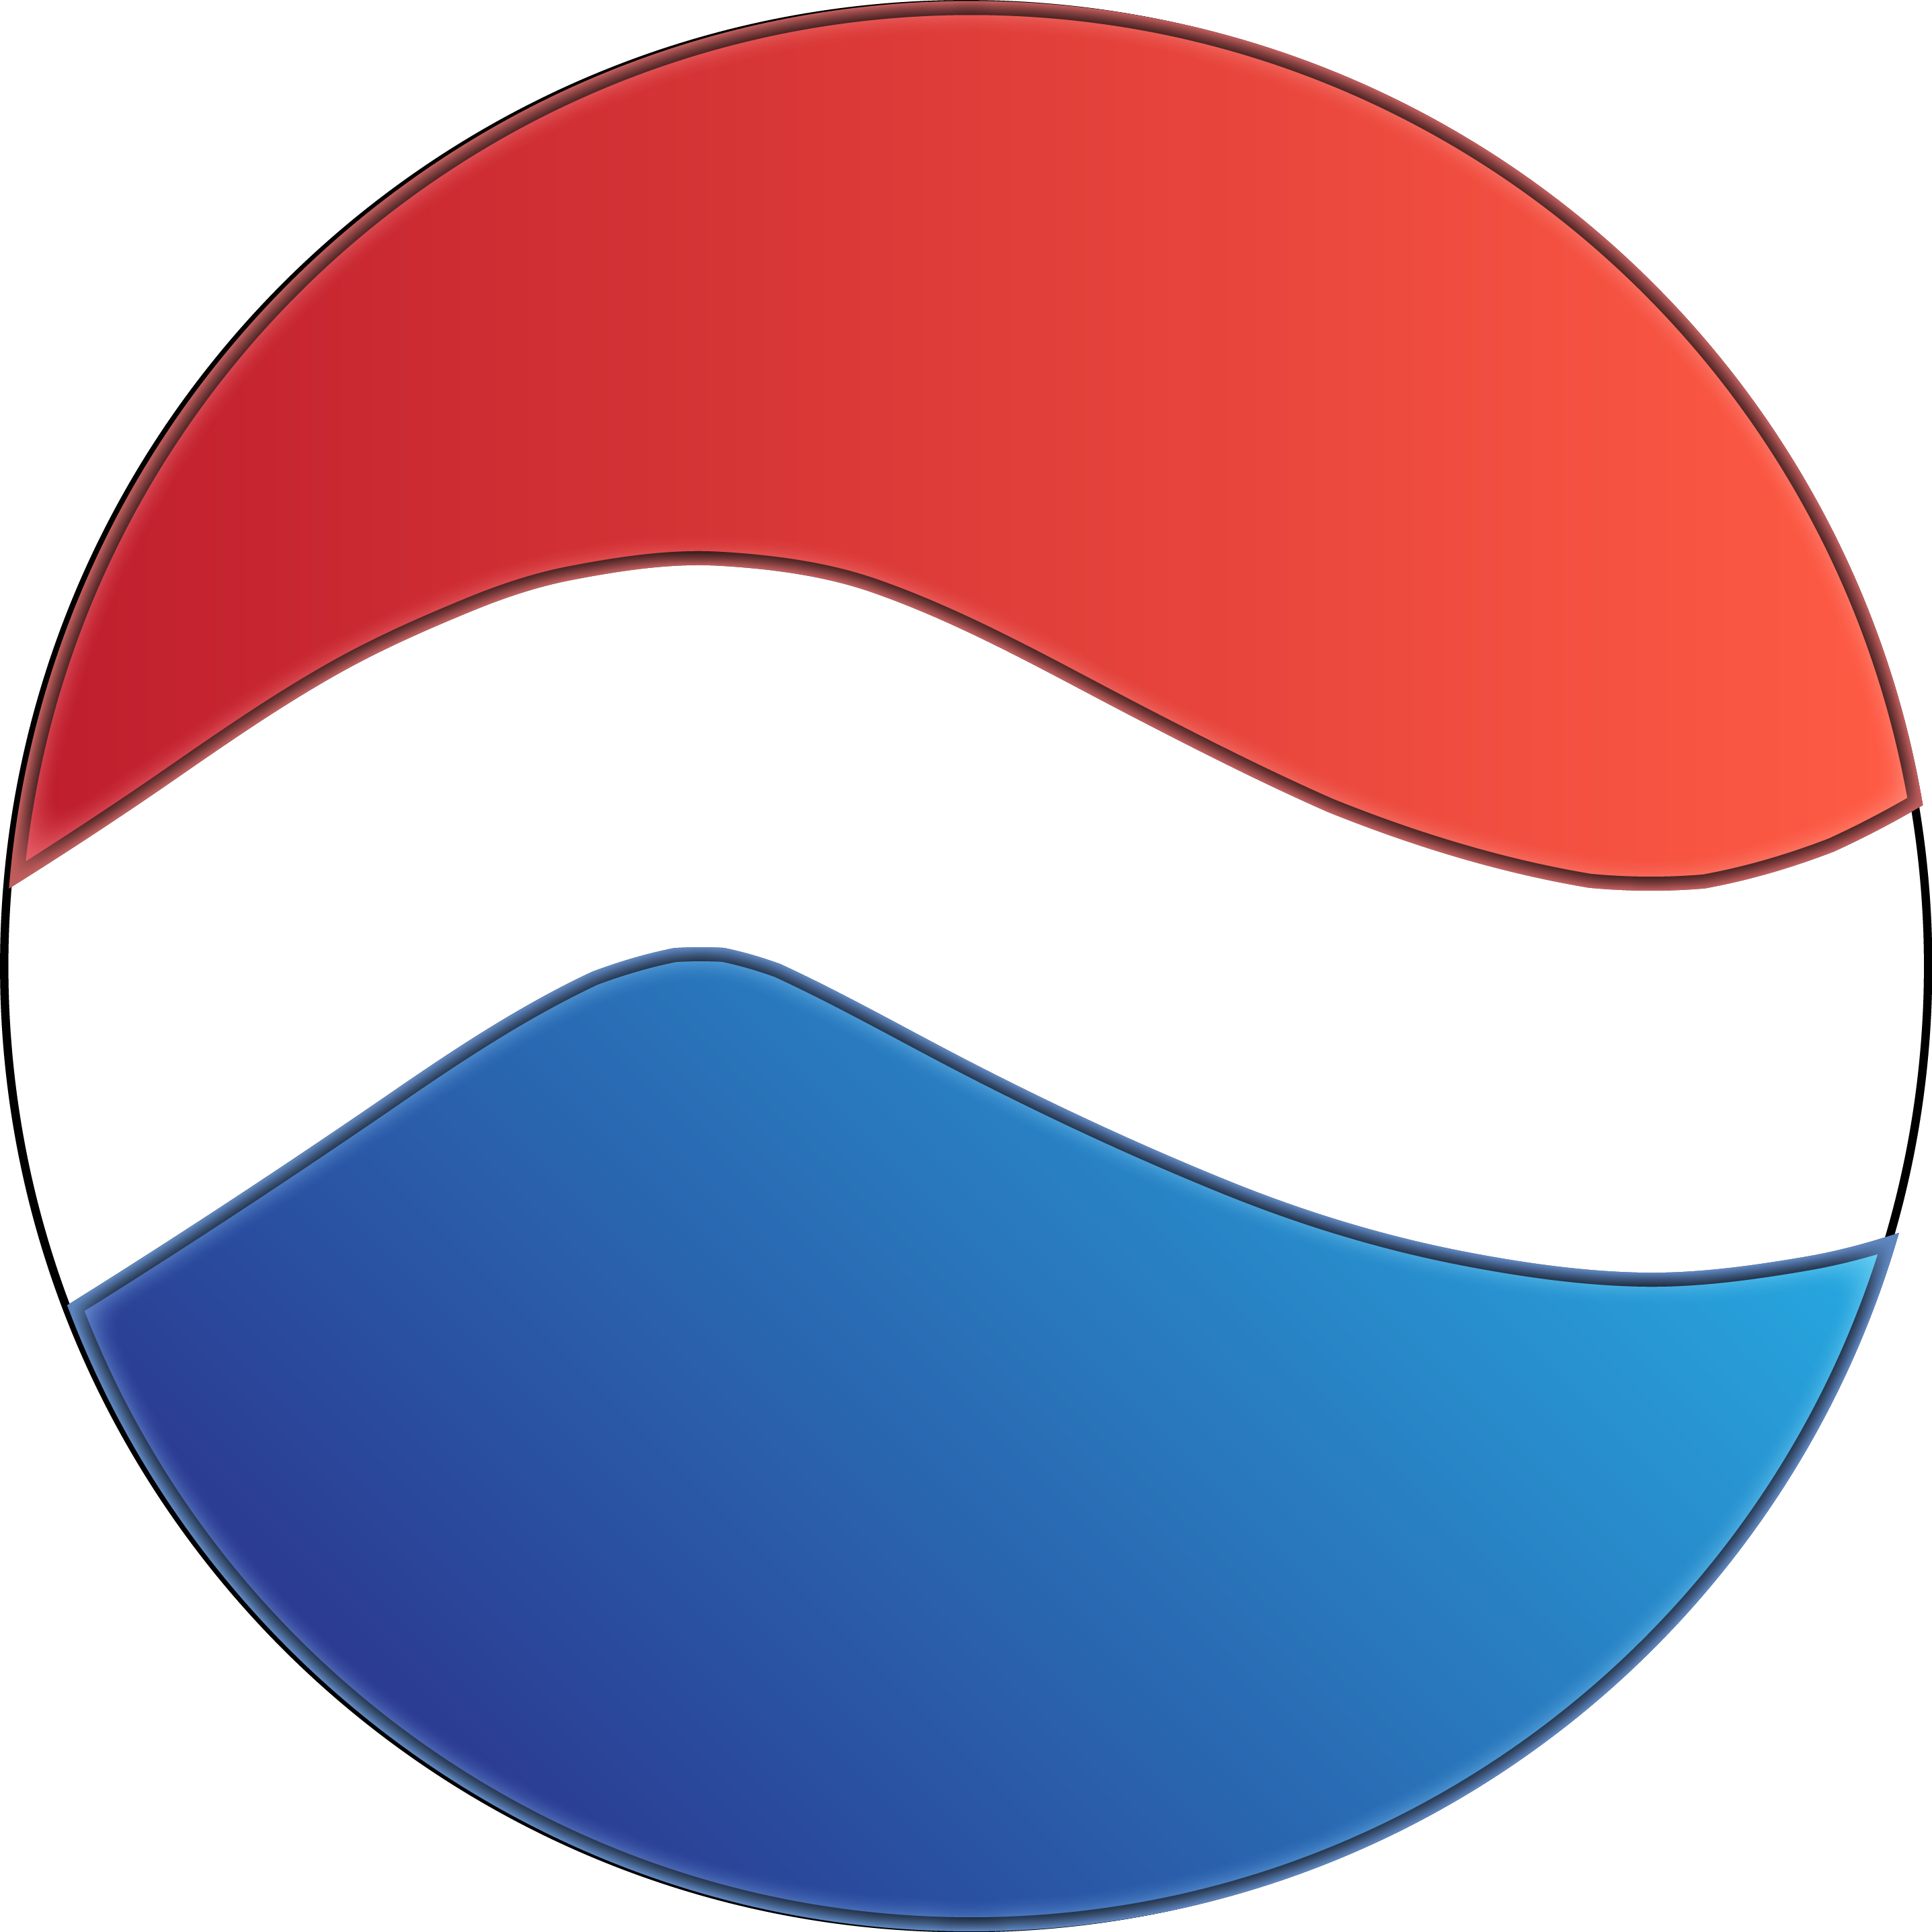 Pepsi - Pepsi (2874x2874)